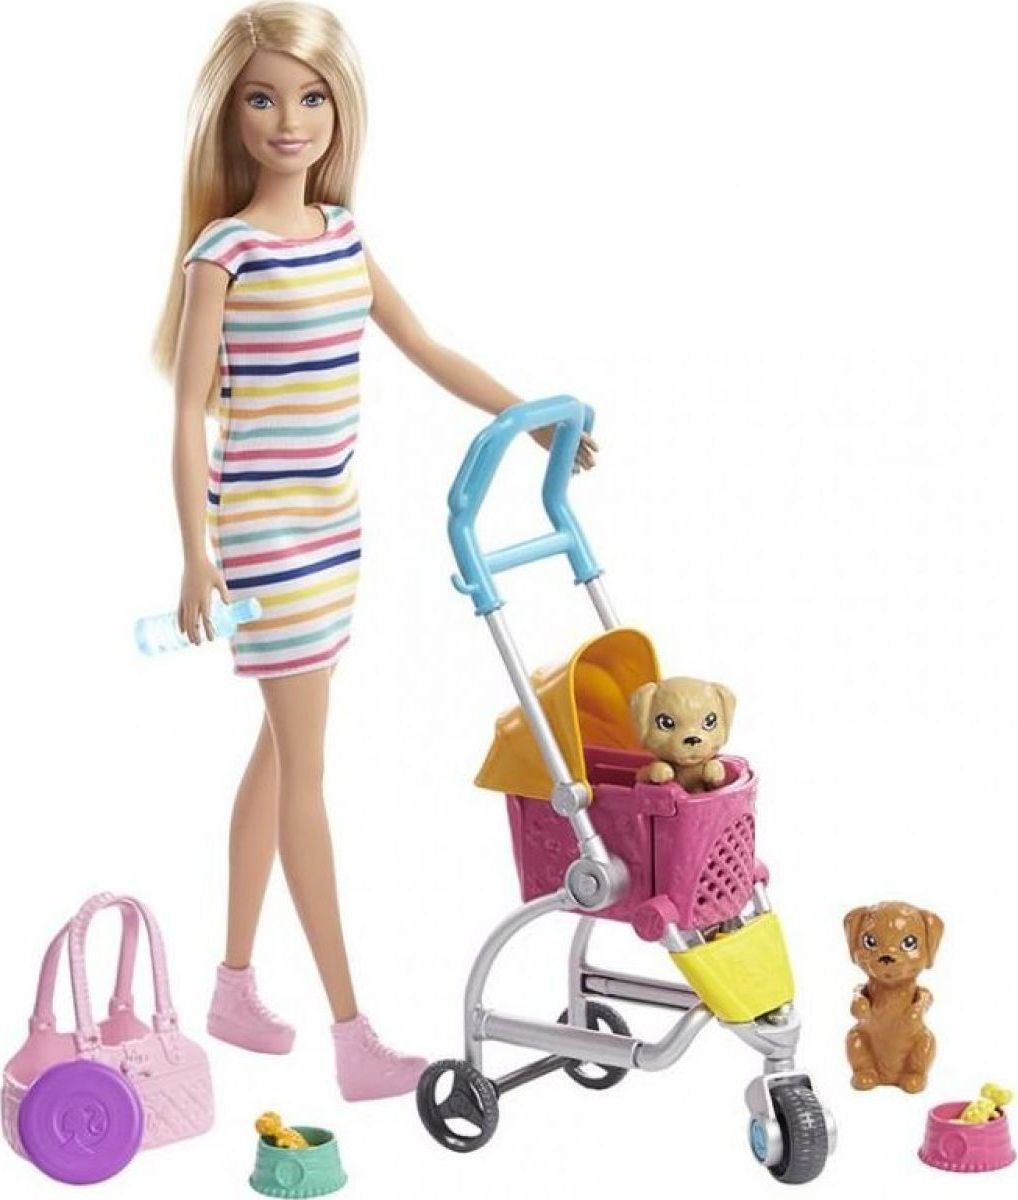 Barbie panenka na vycházce s pejskem - obrázek 1